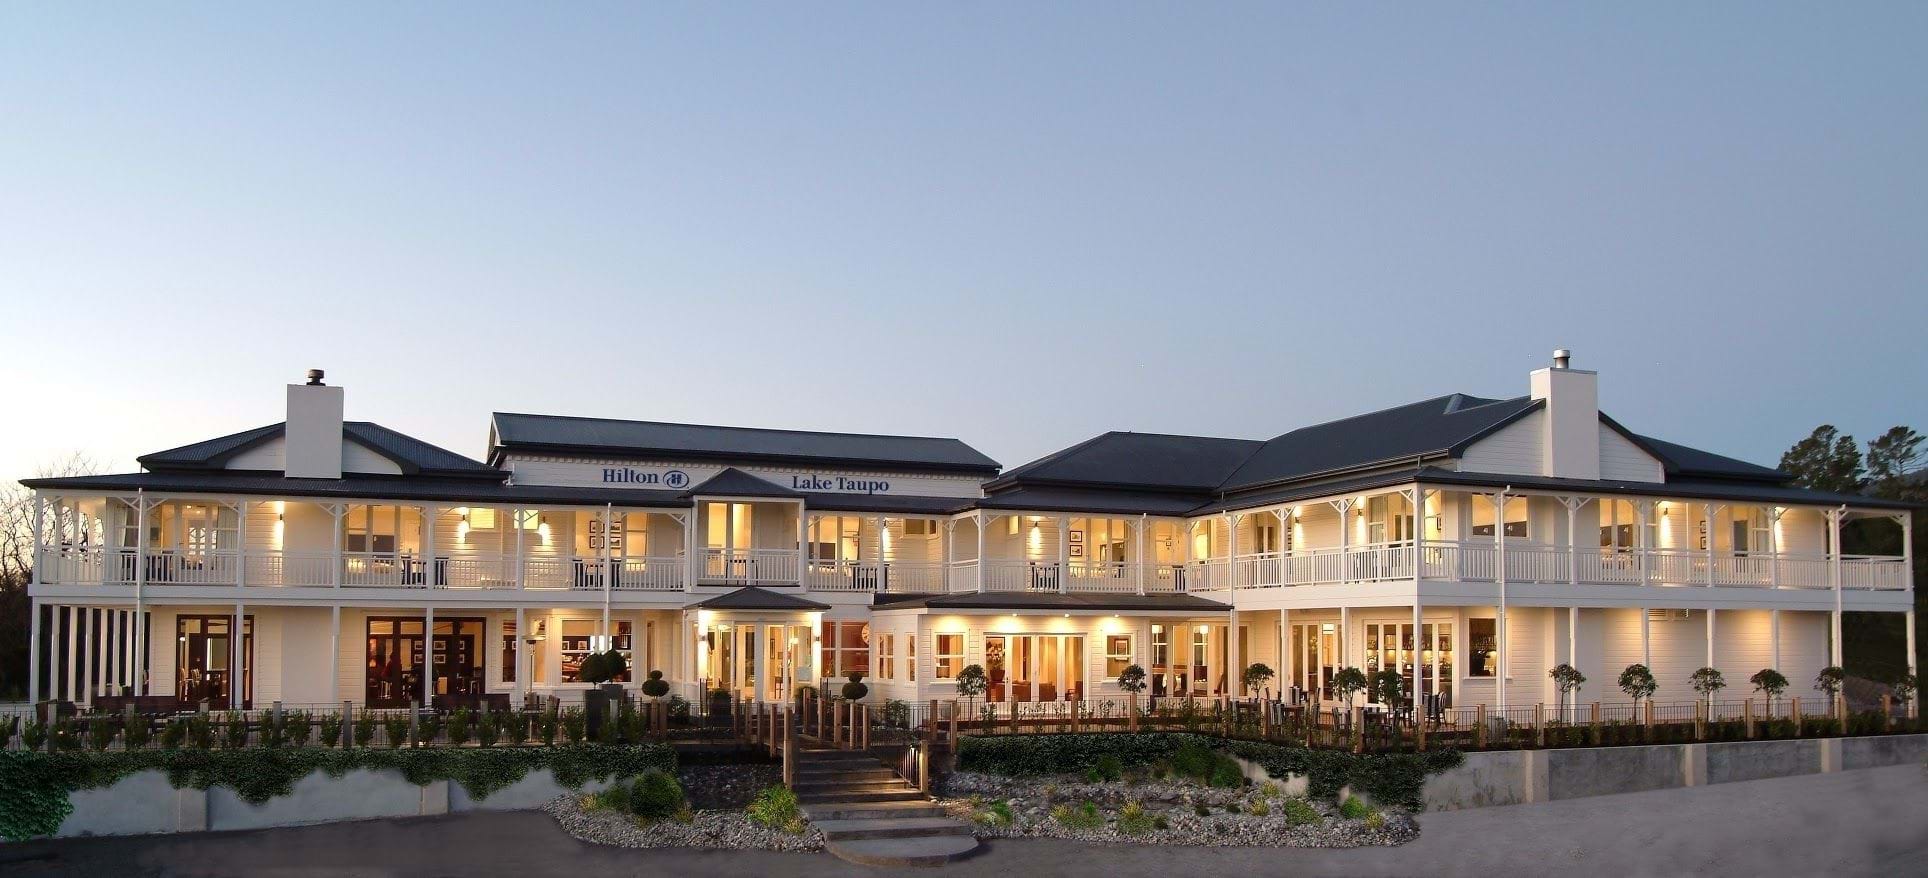 Hilton Terraces Hotel, Taupo Image